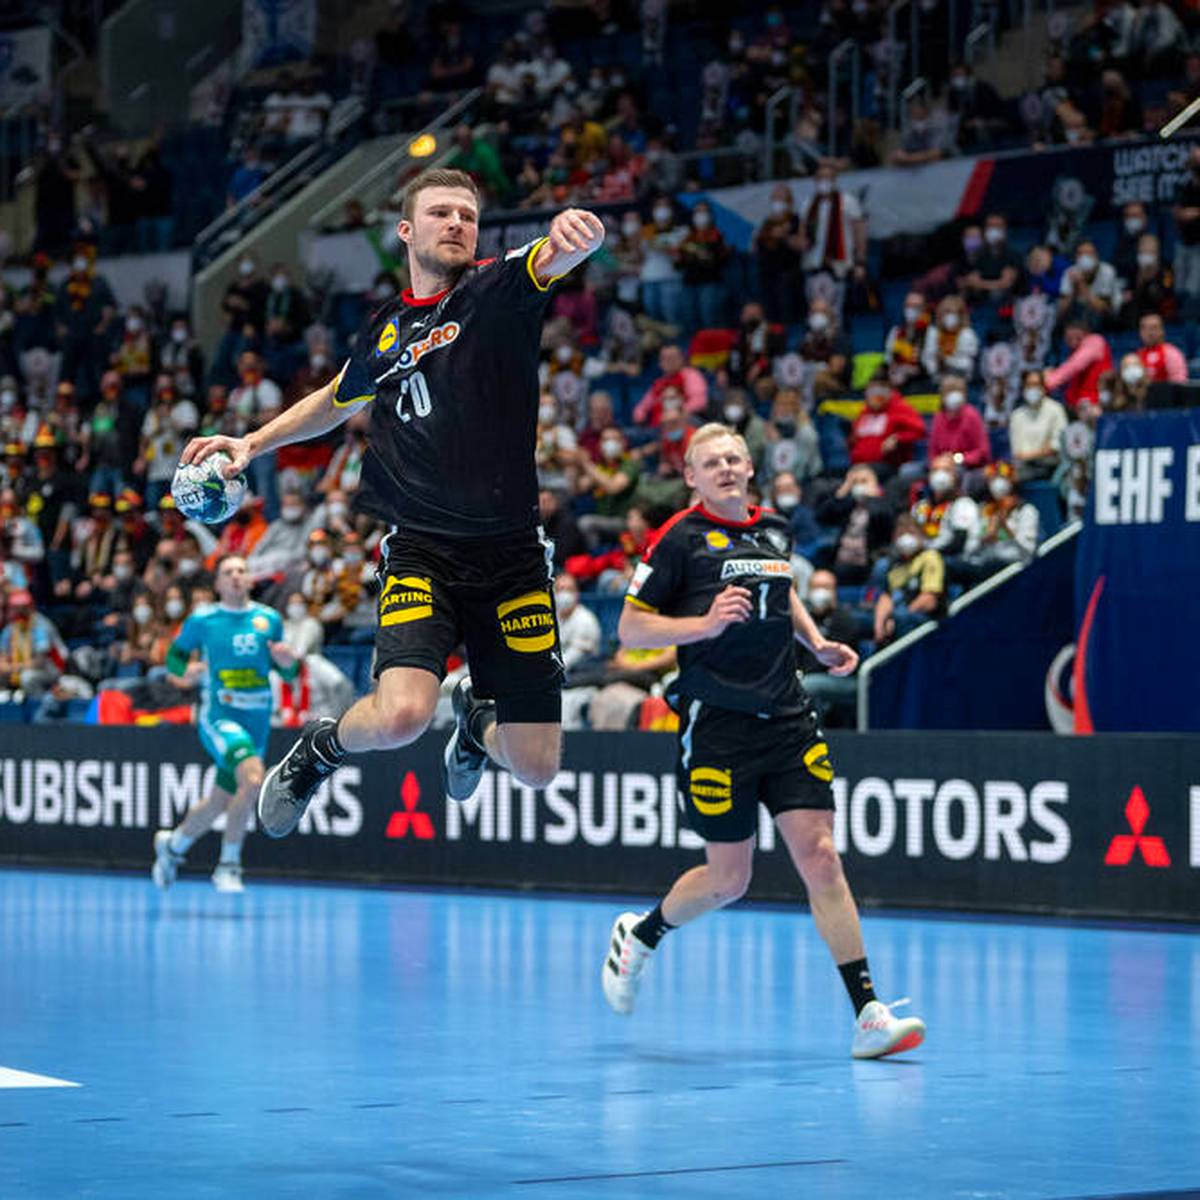 Dank seiner Routiniers feiern die deutschen Handball in einem engen EM-Auftaktspiel einen Sieg gegen Belarus. Die junge Garde muss noch einen Gang zulegen. SPORT1 hat beim DHB-Team nachgefragt.